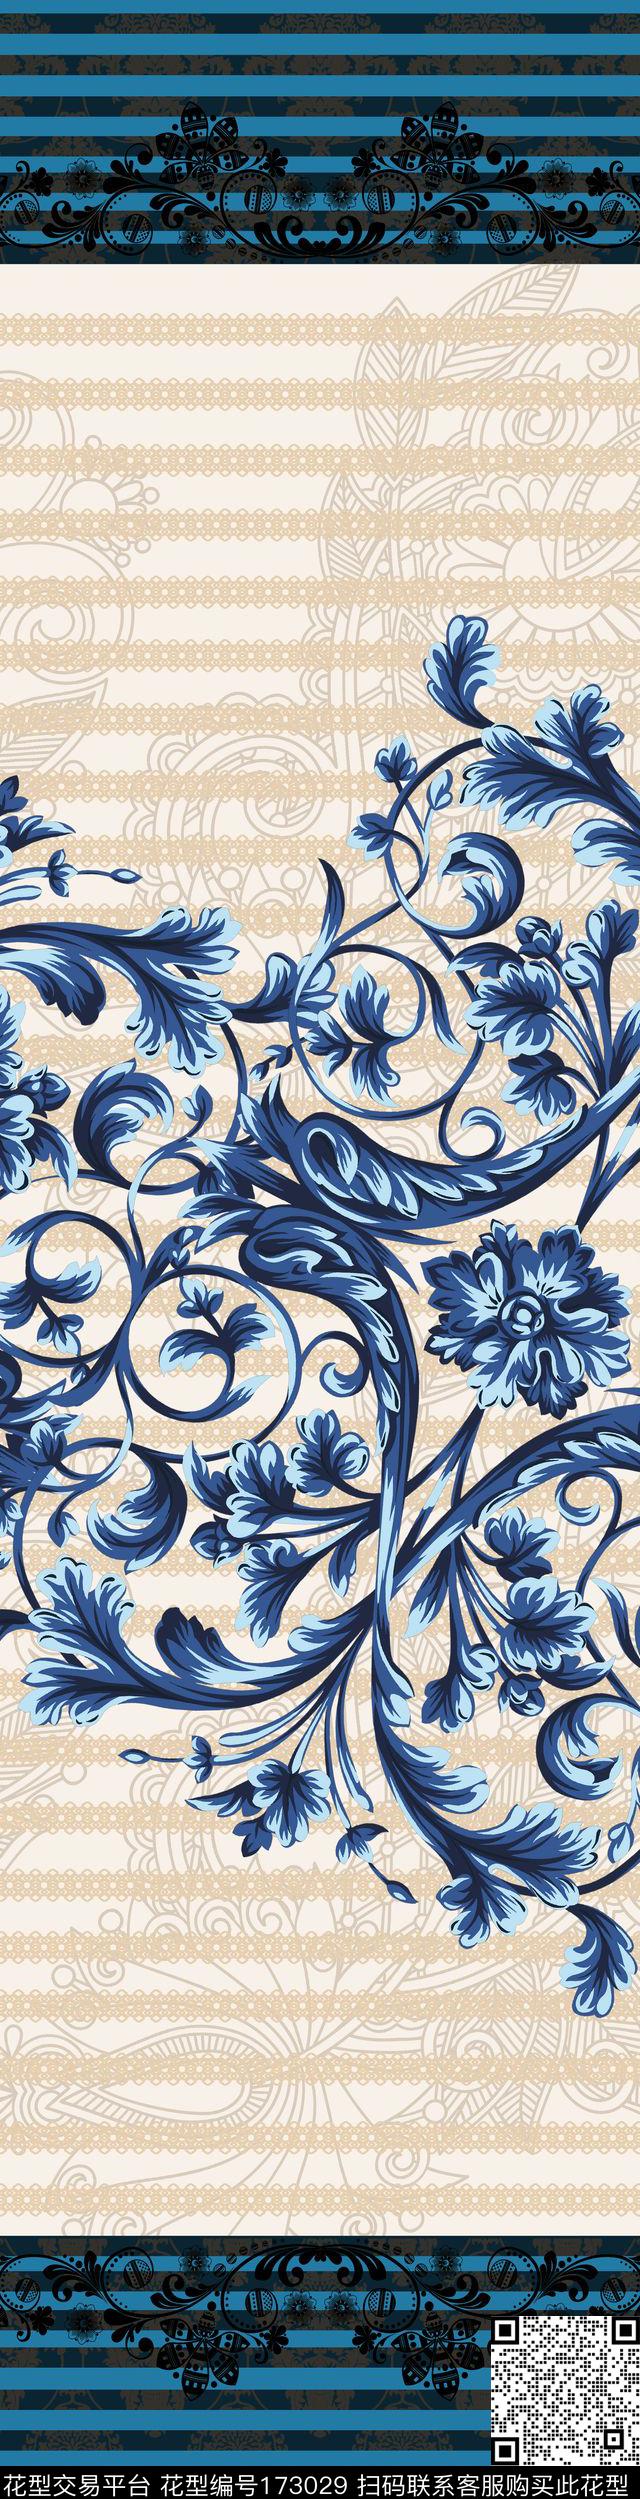 欧式花藤 - 173029 - 条纹 欧洲风情 美式 - 传统印花花型 － 床品花型设计 － 瓦栏